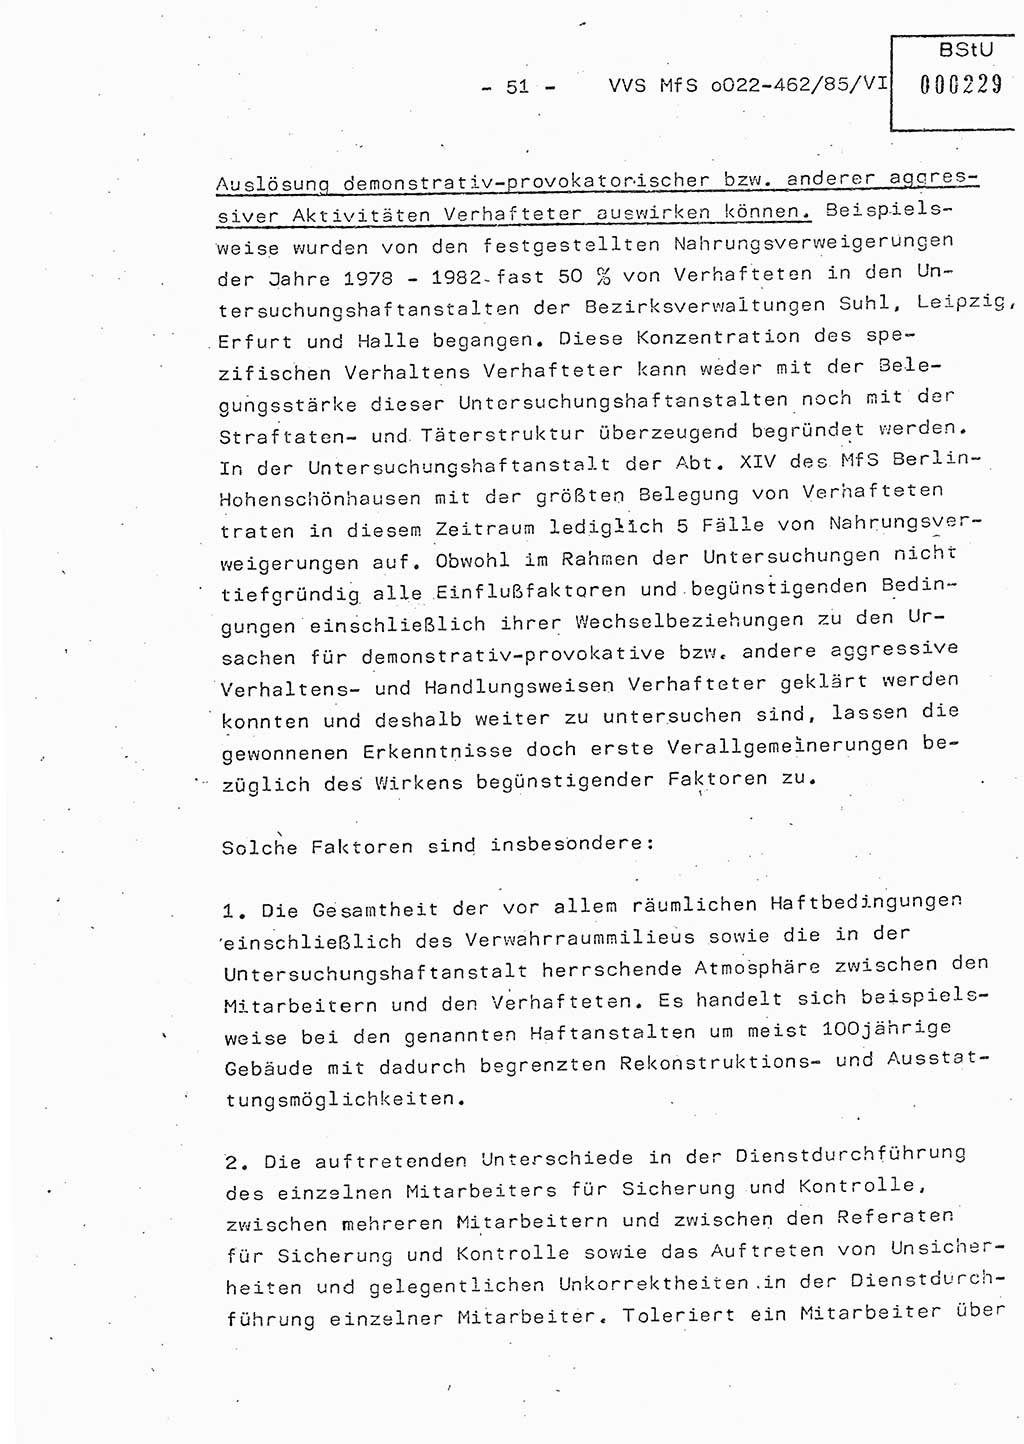 Der Untersuchungshaftvollzug im MfS, Schulungsmaterial Teil Ⅵ, Ministerium für Staatssicherheit [Deutsche Demokratische Republik (DDR)], Abteilung (Abt.) ⅩⅣ, Vertrauliche Verschlußsache (VVS) o022-462/85/Ⅵ, Berlin 1985, Seite 51 (Sch.-Mat. Ⅵ MfS DDR Abt. ⅩⅣ VVS o022-462/85/Ⅵ 1985, S. 51)